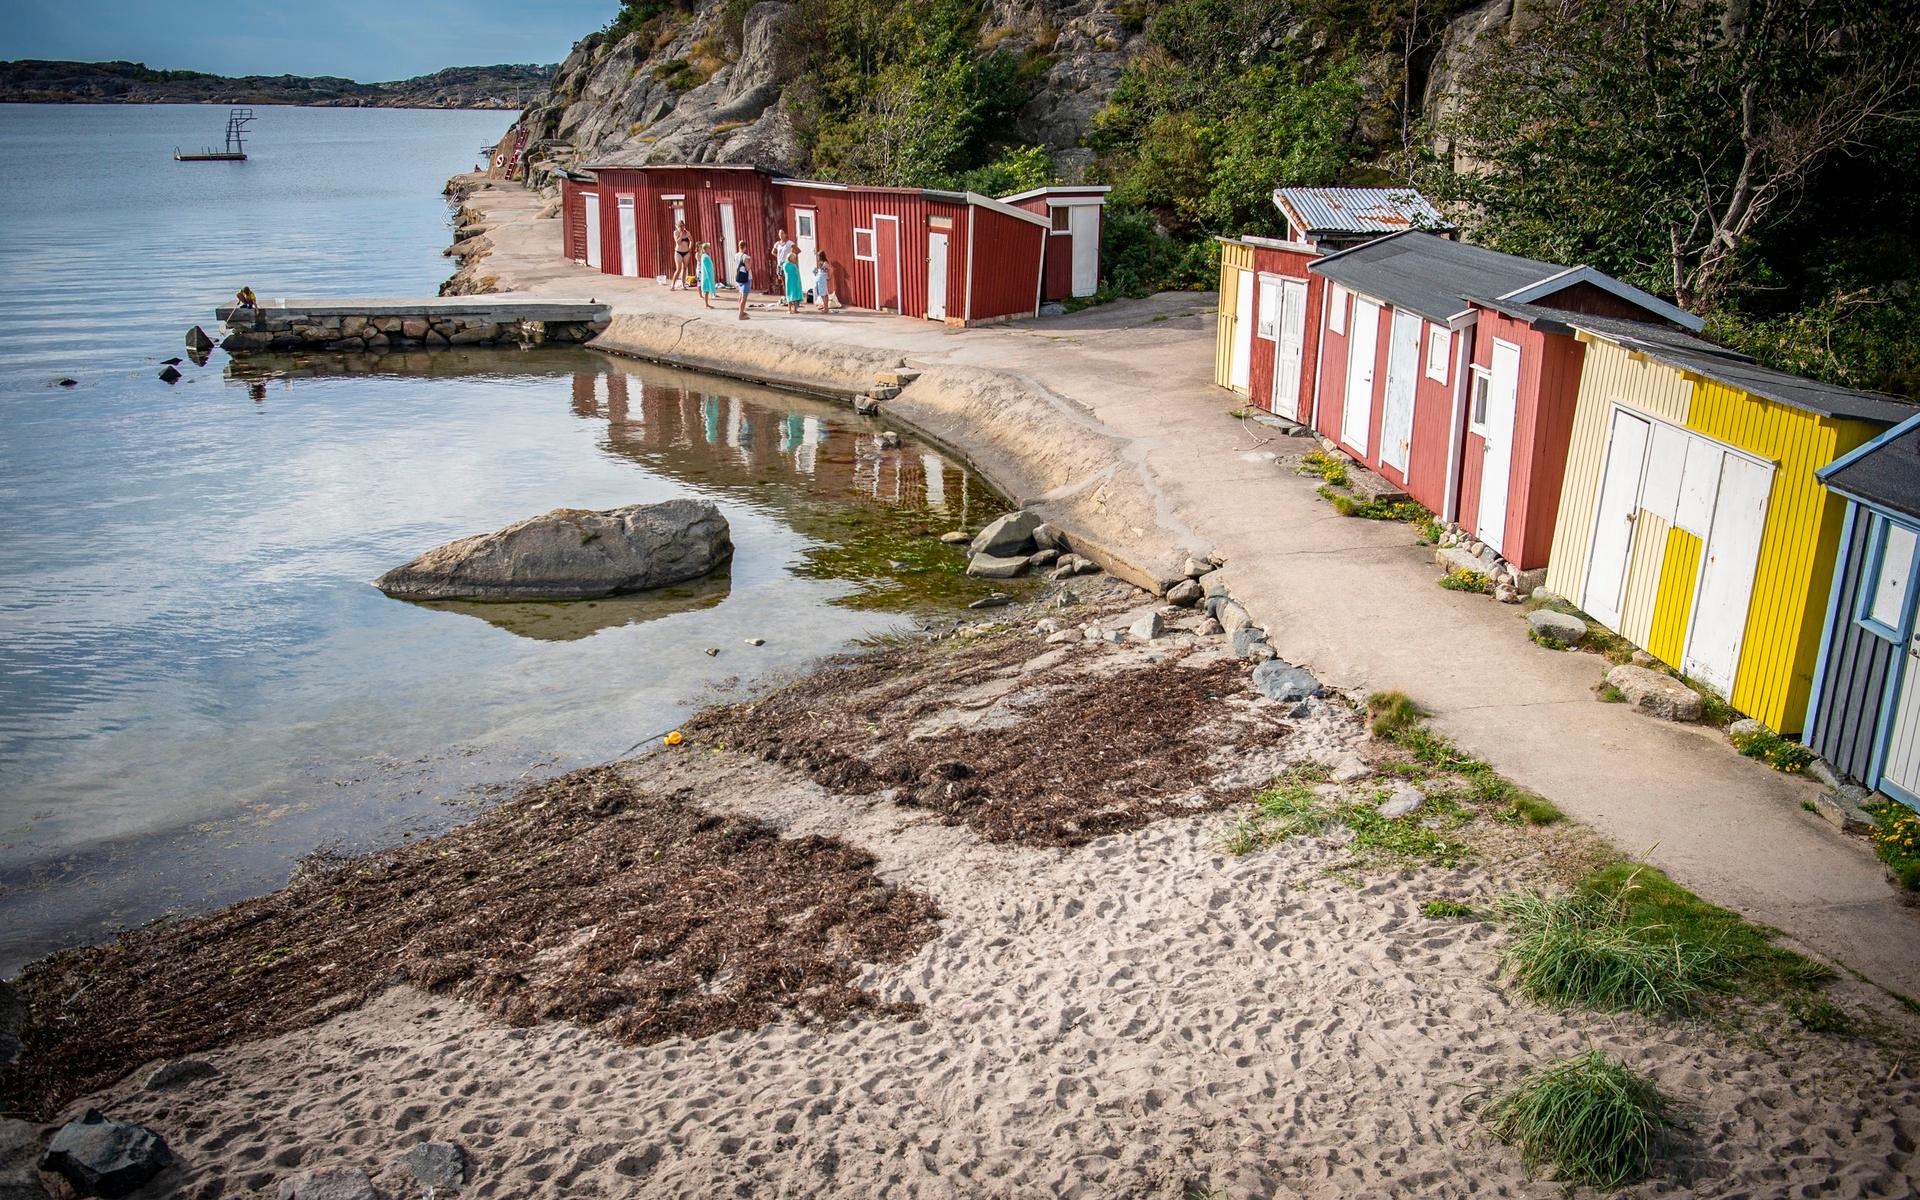 Badplatsen Nordreviken ligger i Billdal, på kommungränsen mellan Kungsbacka och Göteborg. 